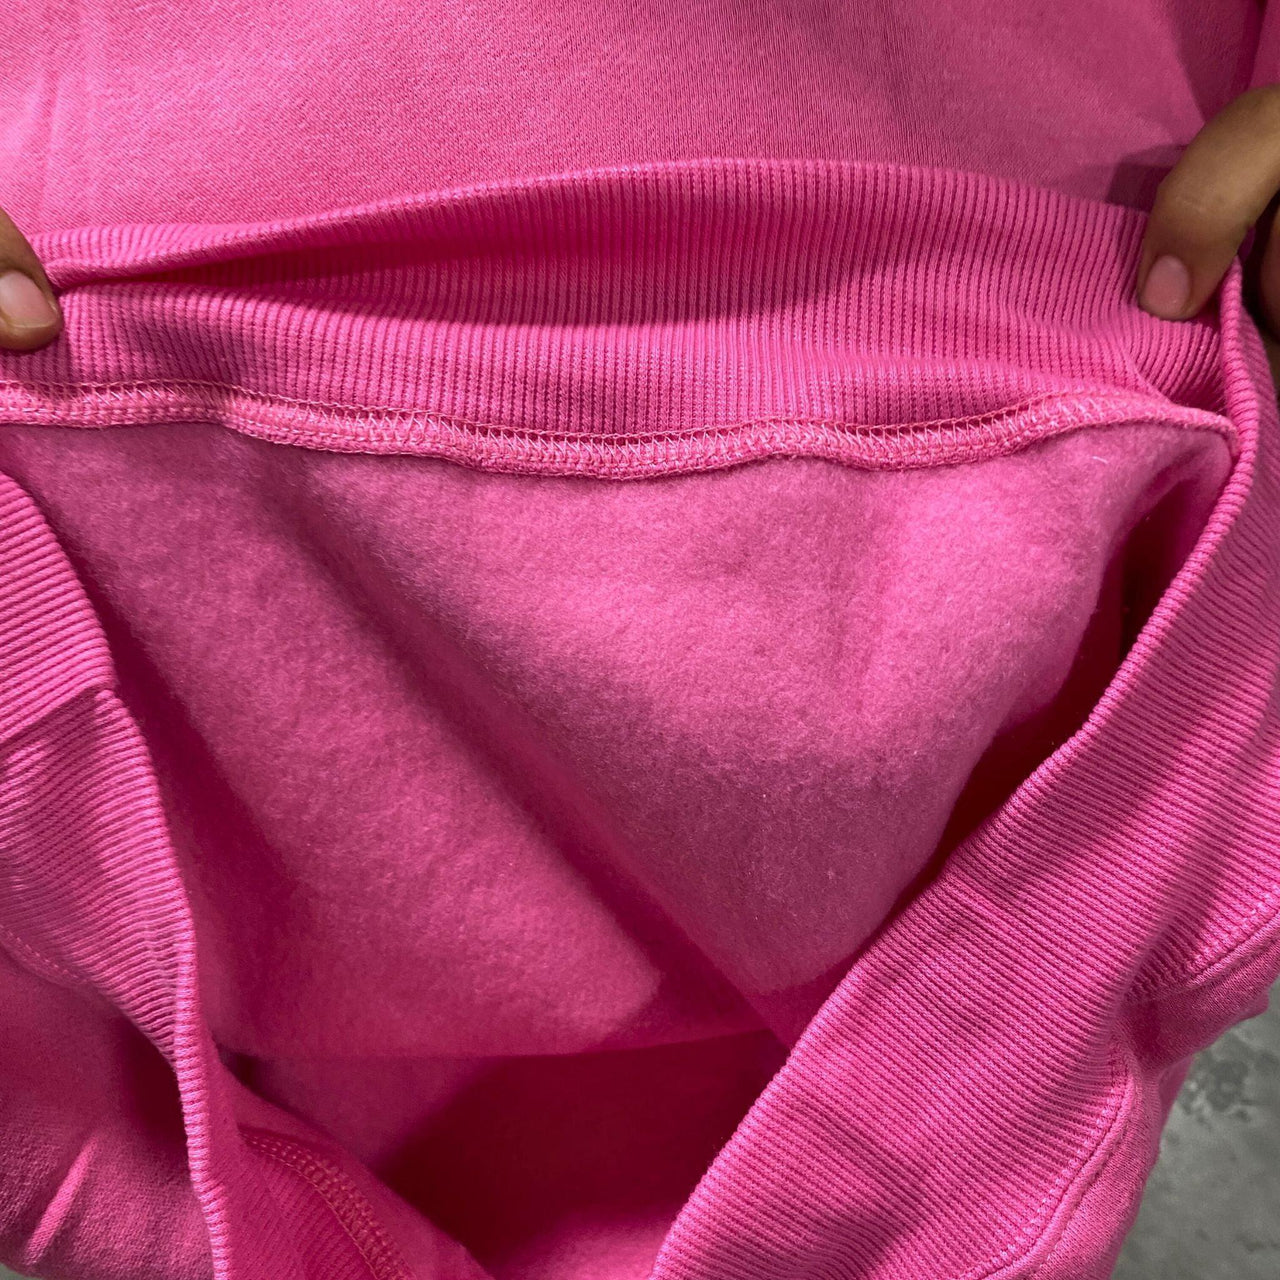 Bobbie Brooks Ladies - Pink Size (L) Sweatshirt (48 Pcs Lot) - Discount Wholesalers Inc